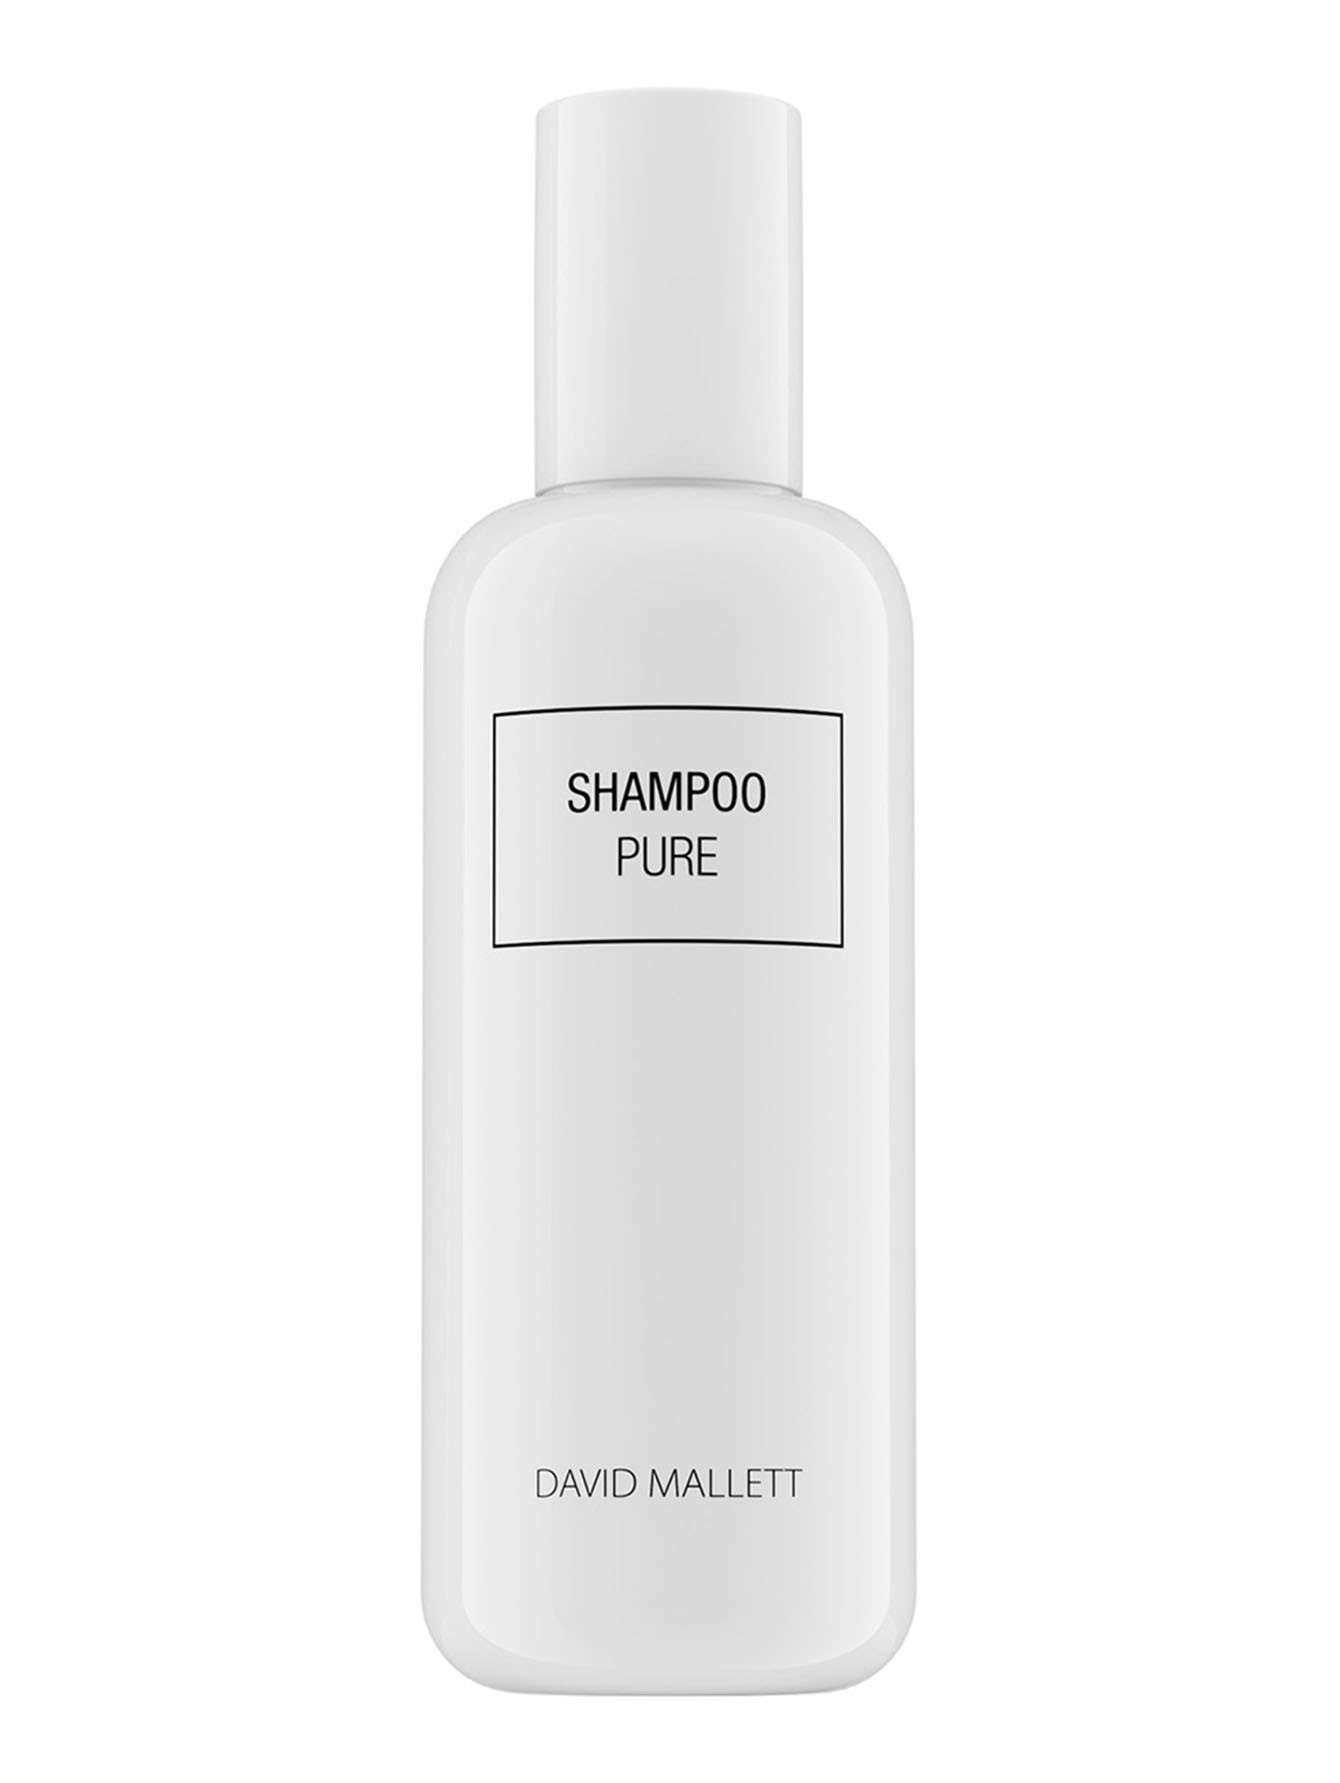 Питательный шампунь для сияния волос Shampoo Pure, 250 мл - Общий вид